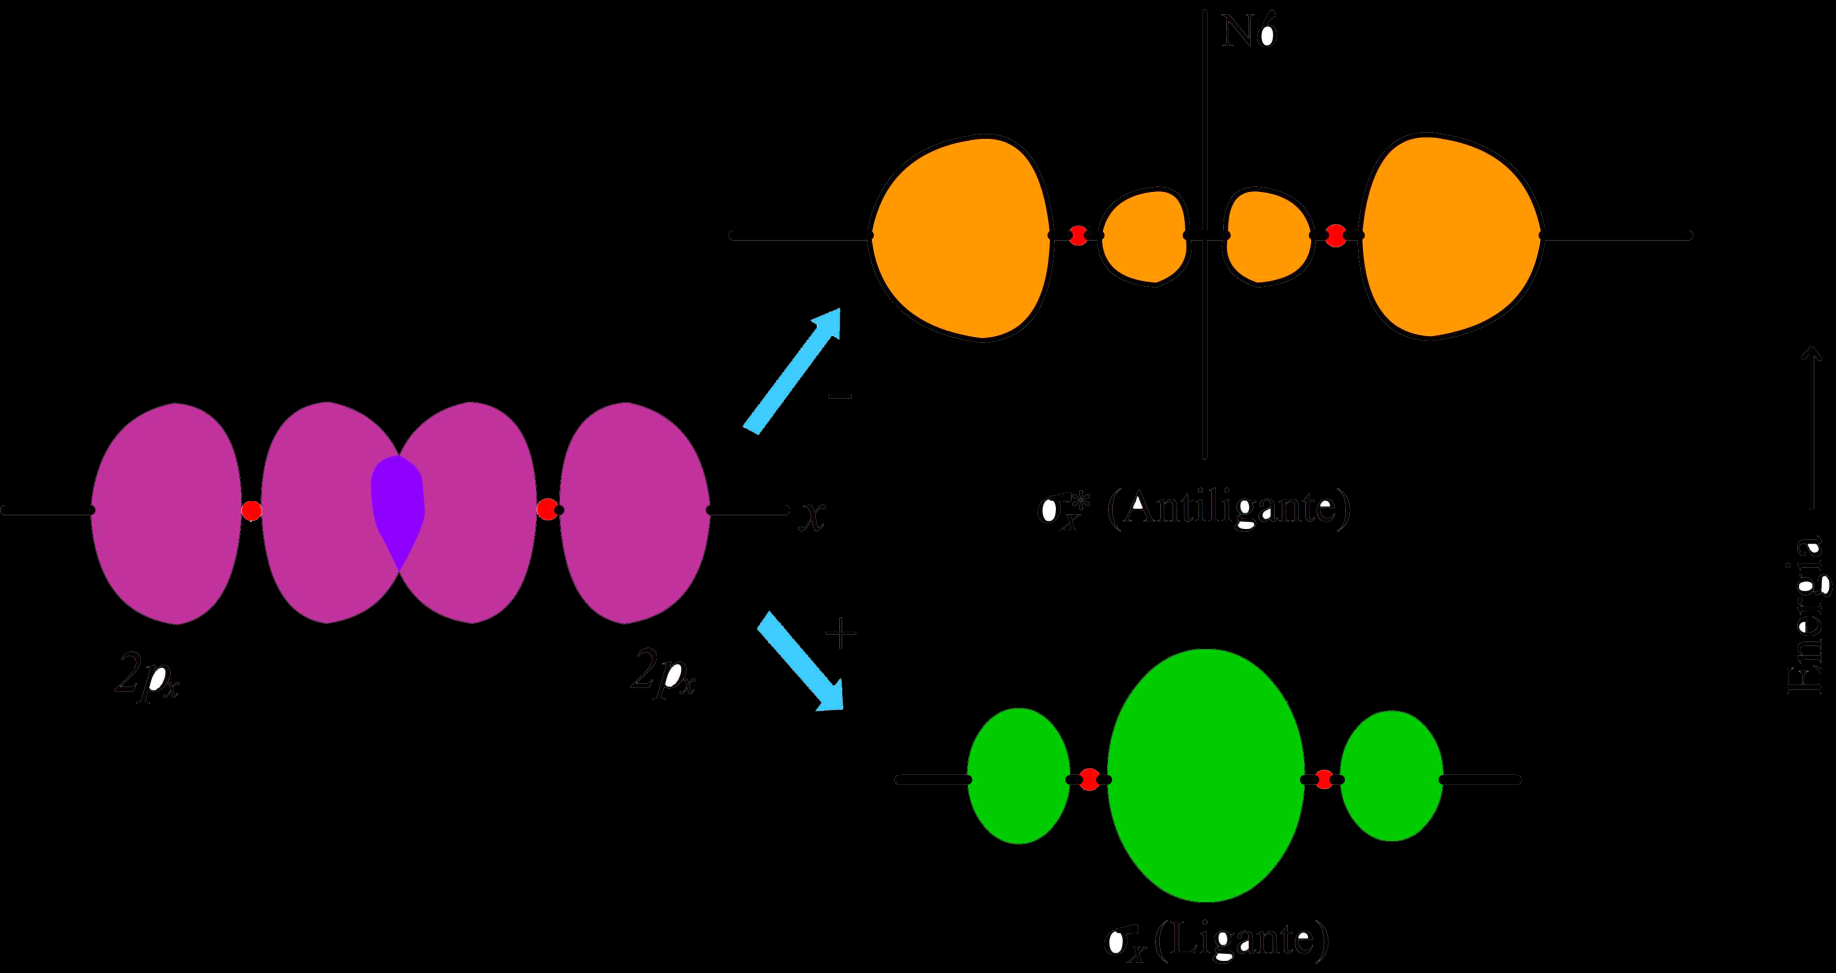 Combinação de 2 OAs p x para formar 2 OMs Dois OAs 2p x se sobrepõem formando um OM ligante (σ x ) e um OM antiligante (σ x *).